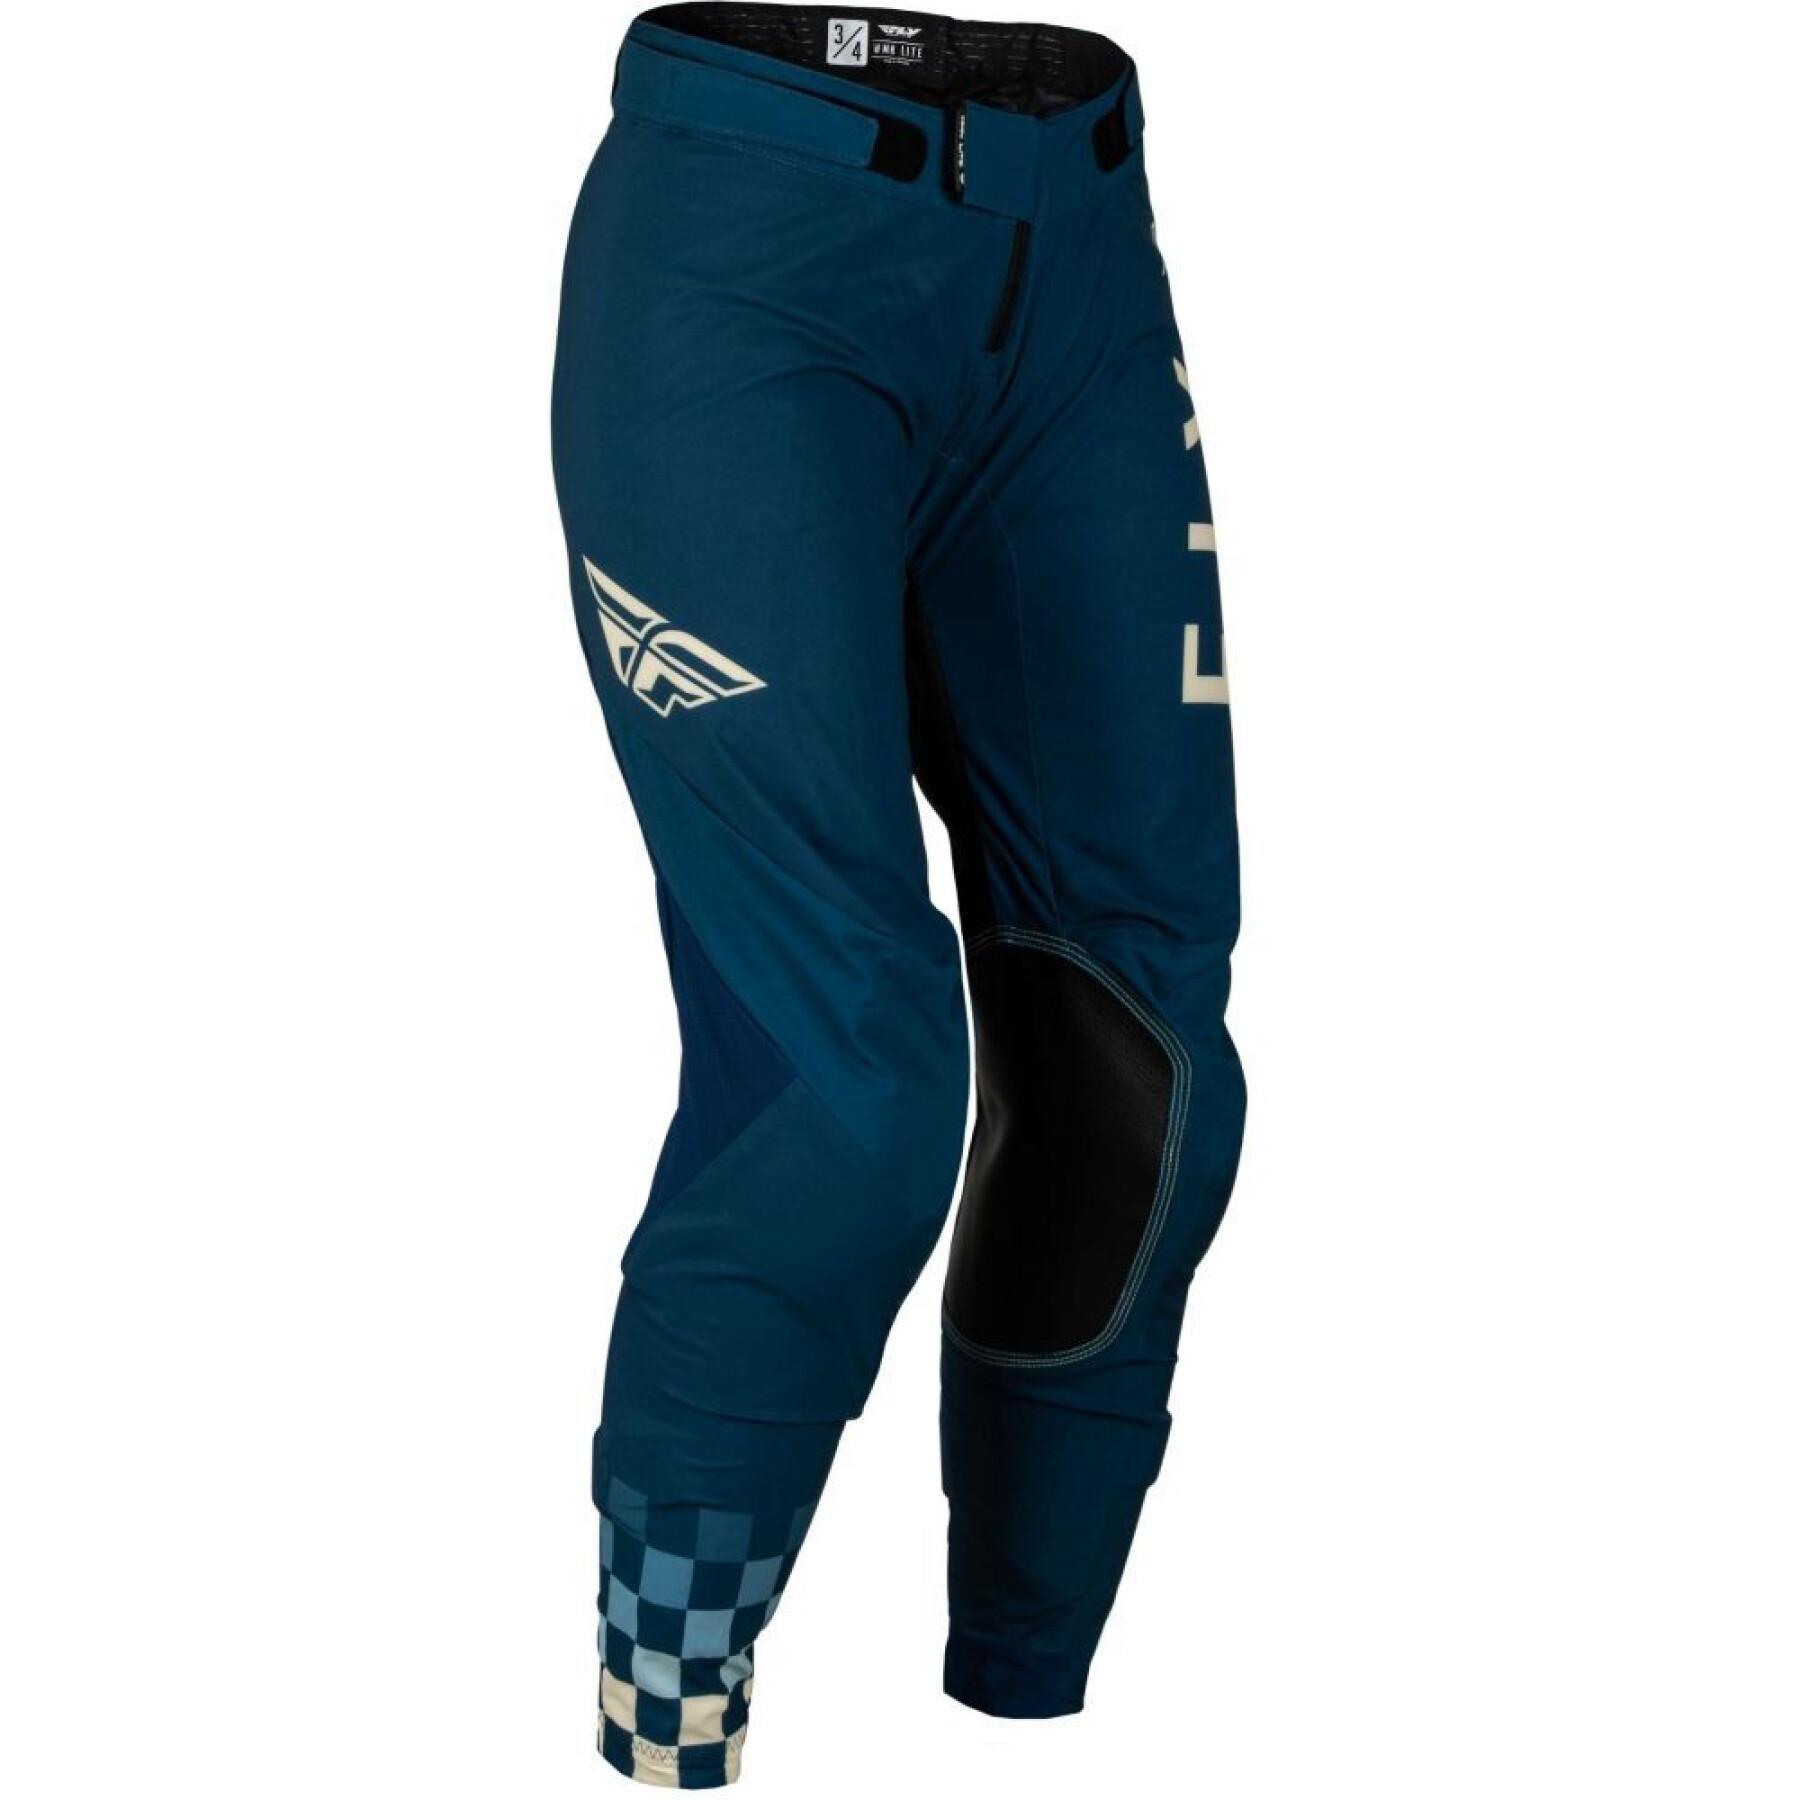 Women's motocross pants Fly Racing Lite